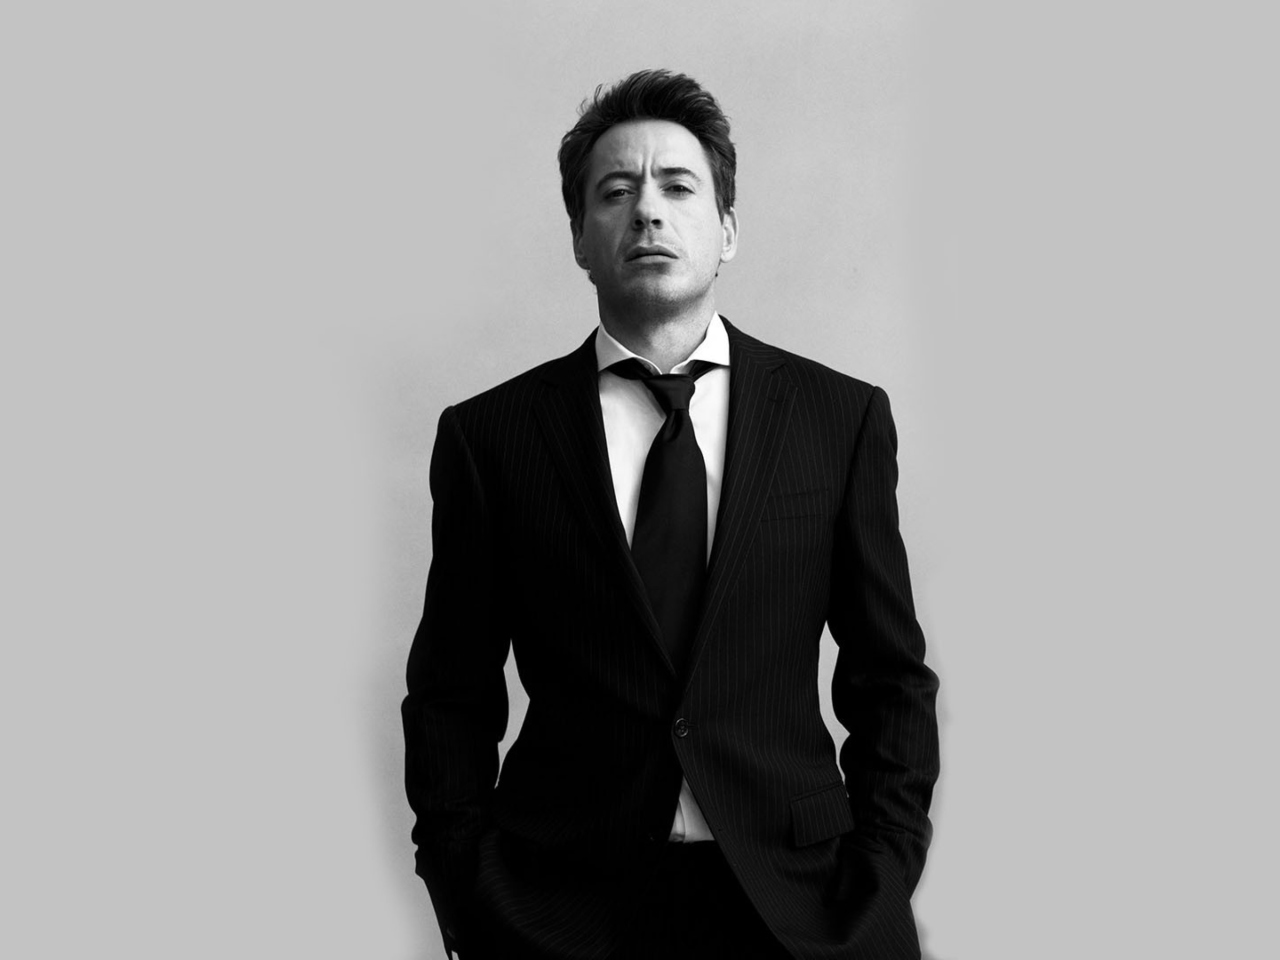 Das Robert Downey Junior Black Suit Wallpaper 1280x960